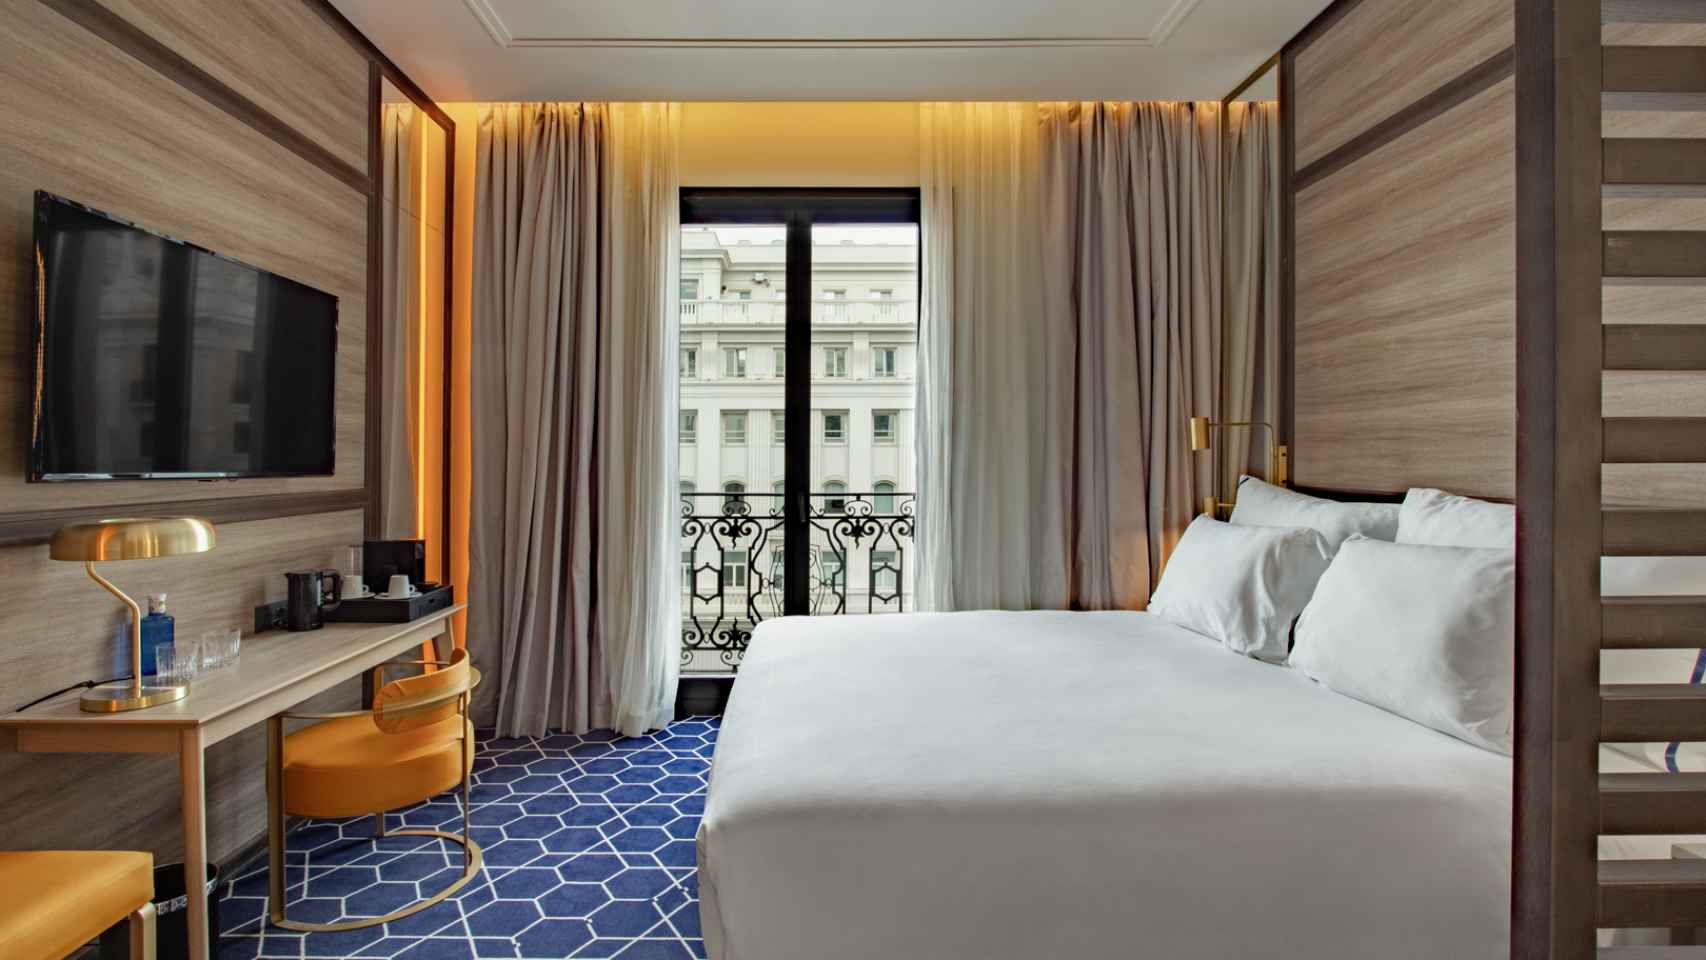 Una de las habitaciones de su nuevo hotel madrileño, Pestana Gran Vía.